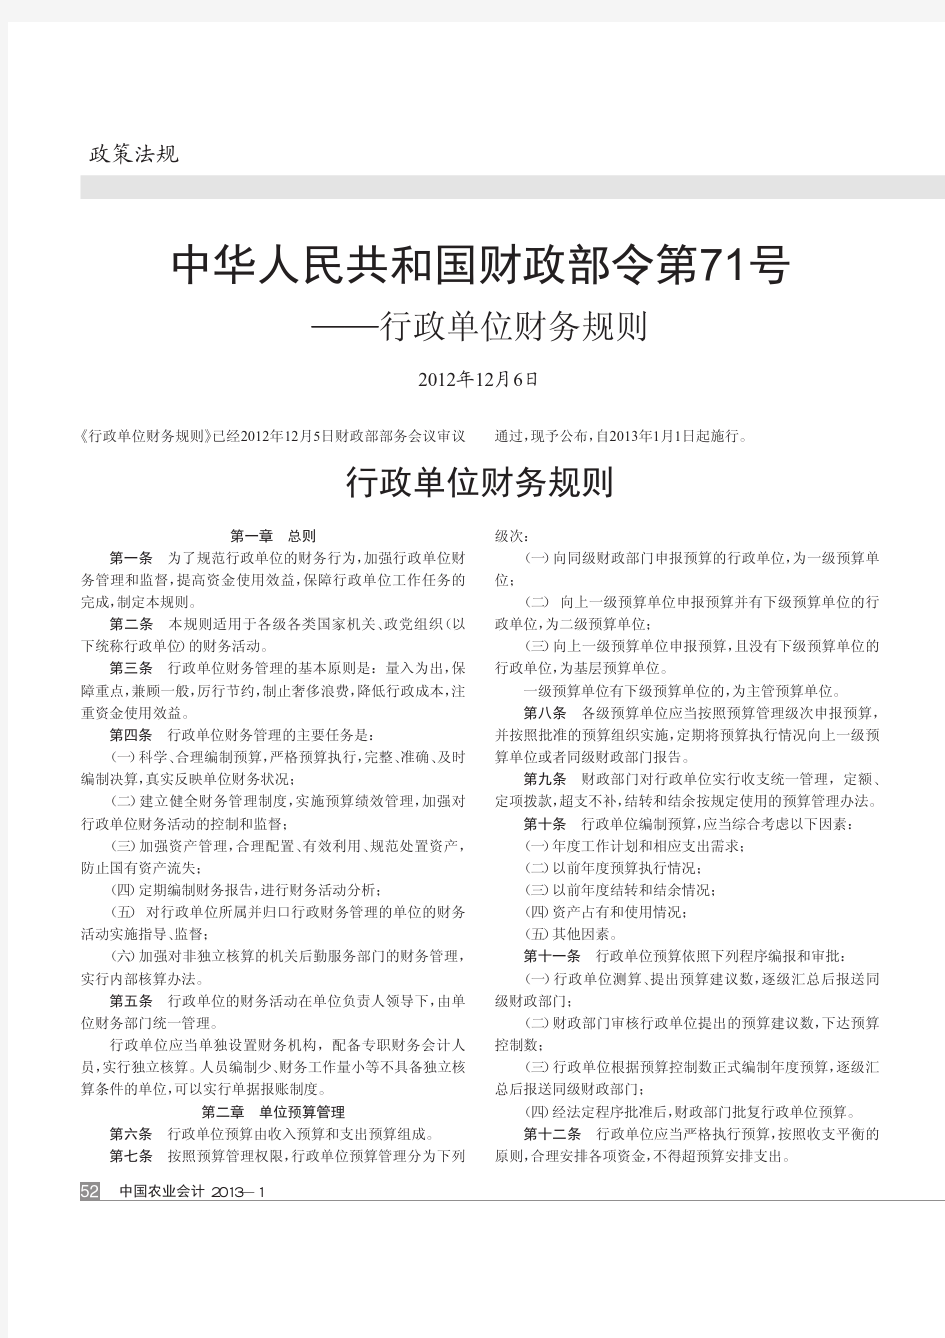 中华人民共和国财政部令第71号——行政单位财务规则